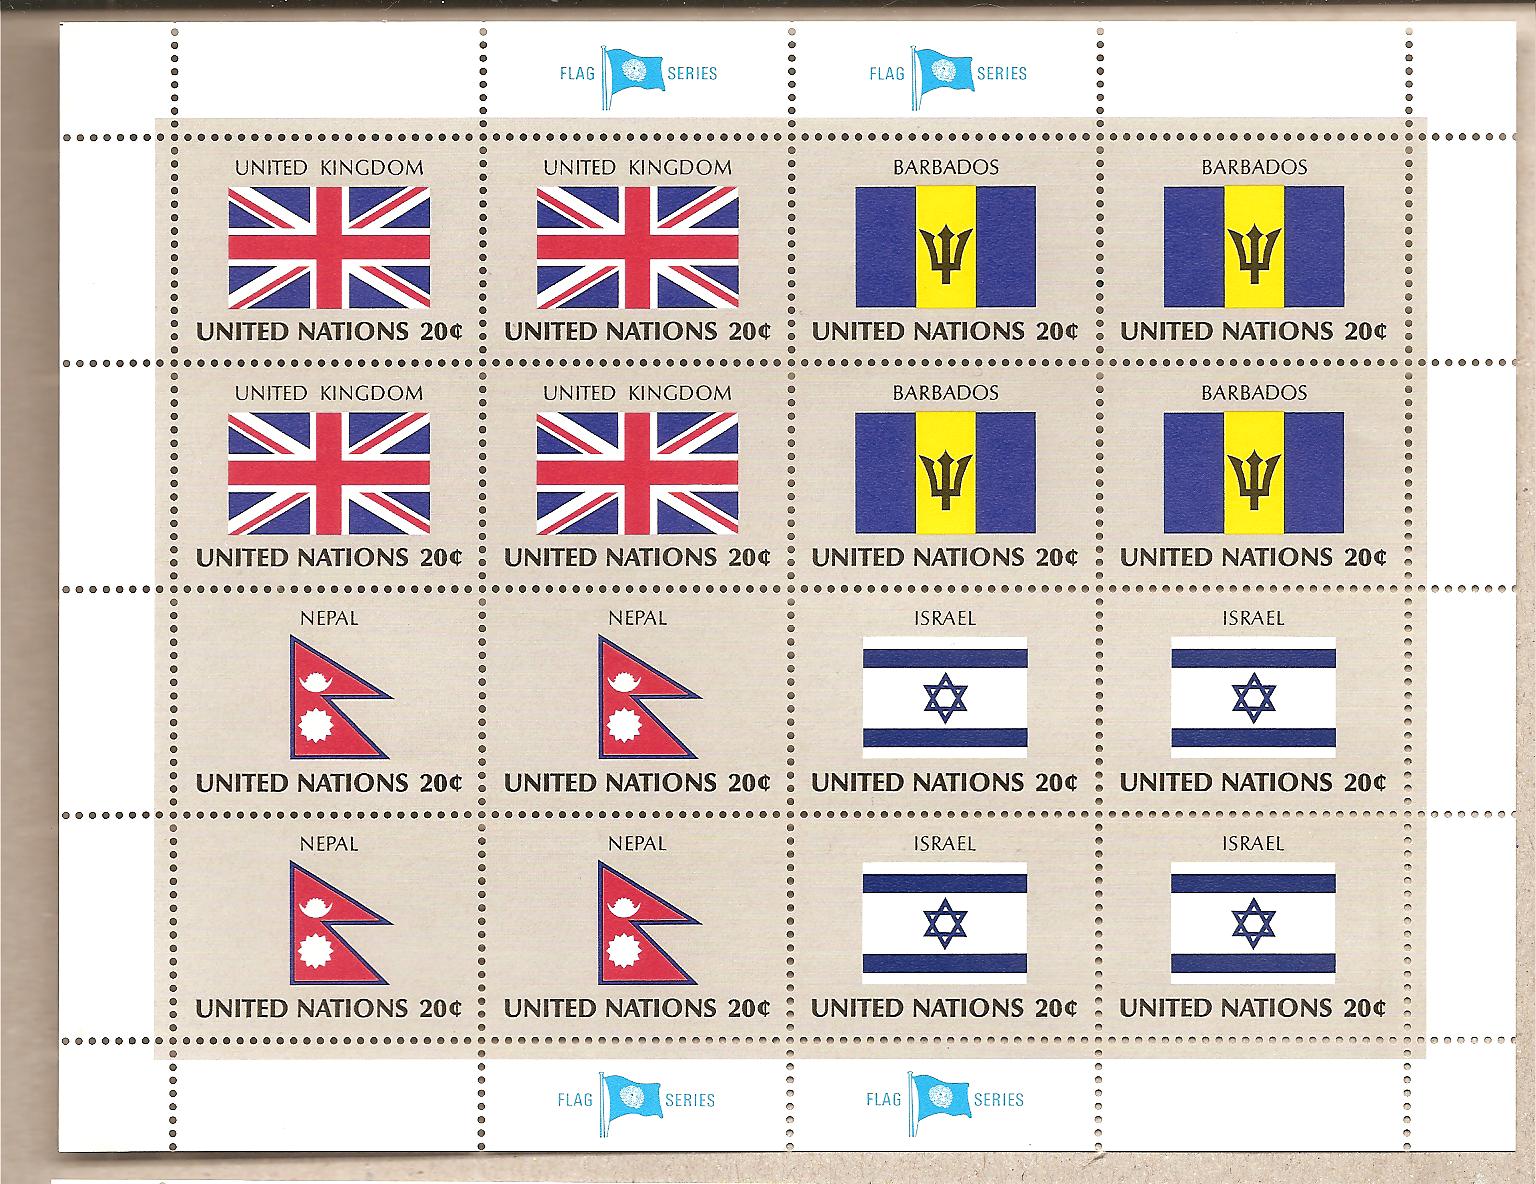 41297 - ONU New York - foglietto nuovo serie bandiere: Regno Unito, Barbados, Nepal, Israele